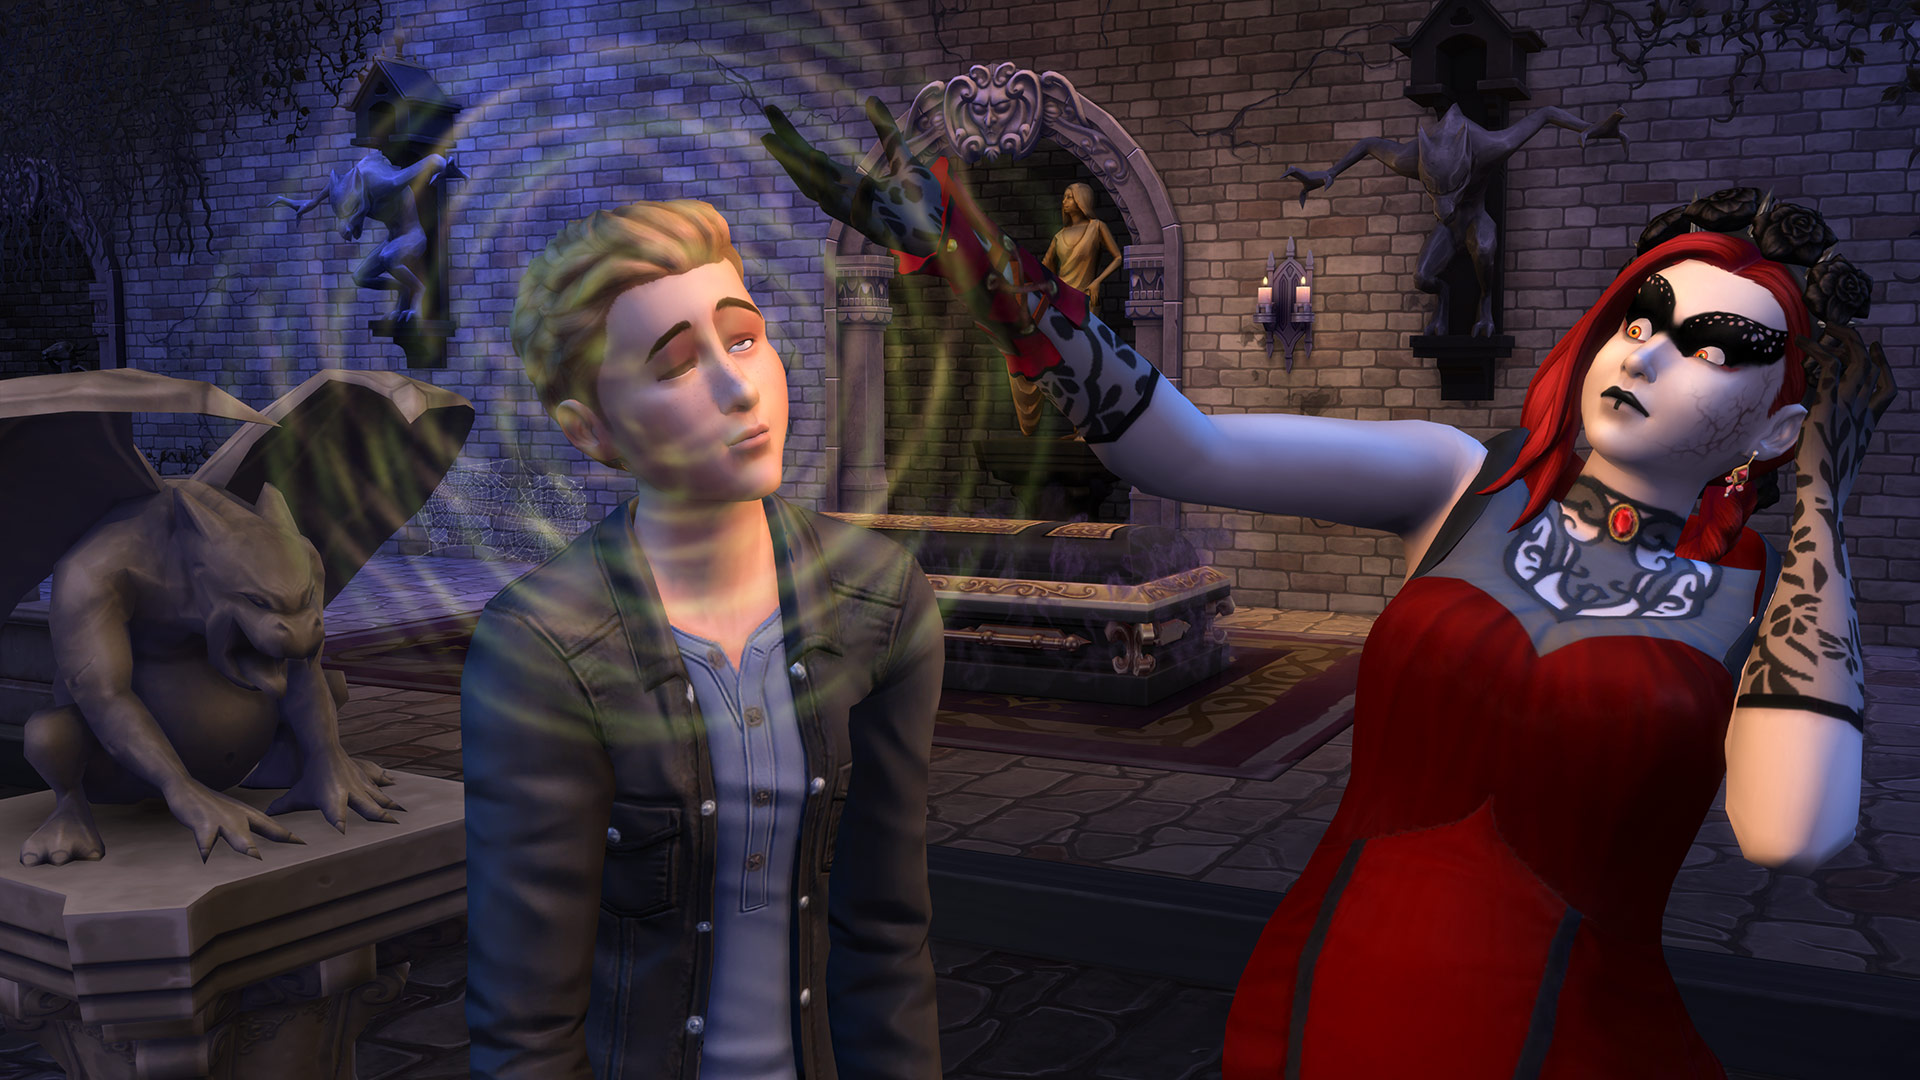 The Sims 4: Vampires - screenshot 3